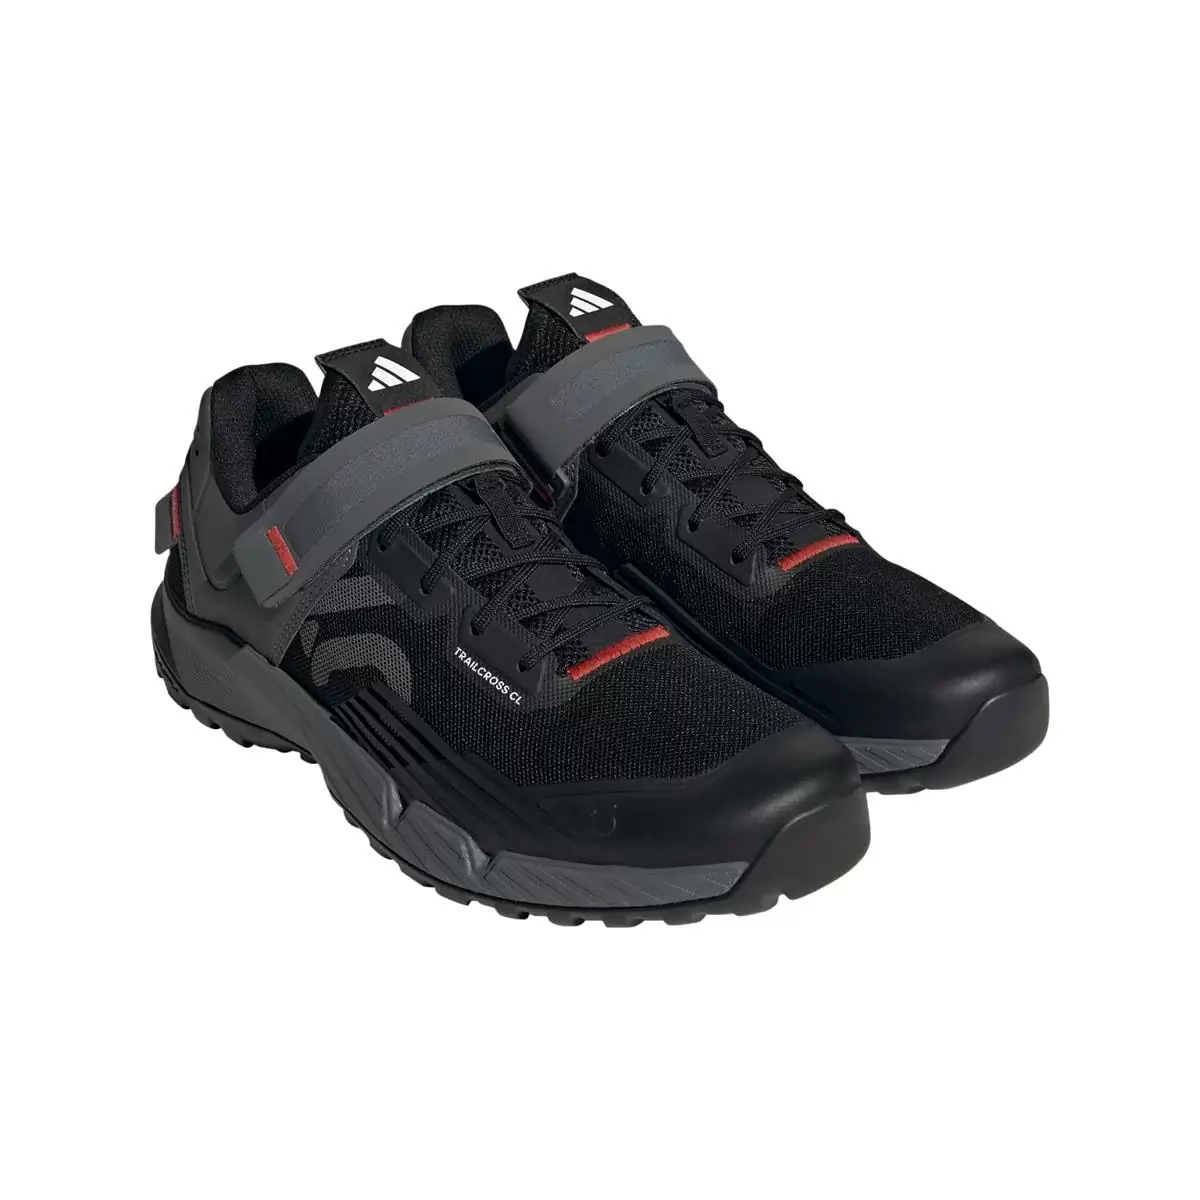 Clip 5.10 Trailcross MTB Shoes Black/Grey Size 44.5 #1